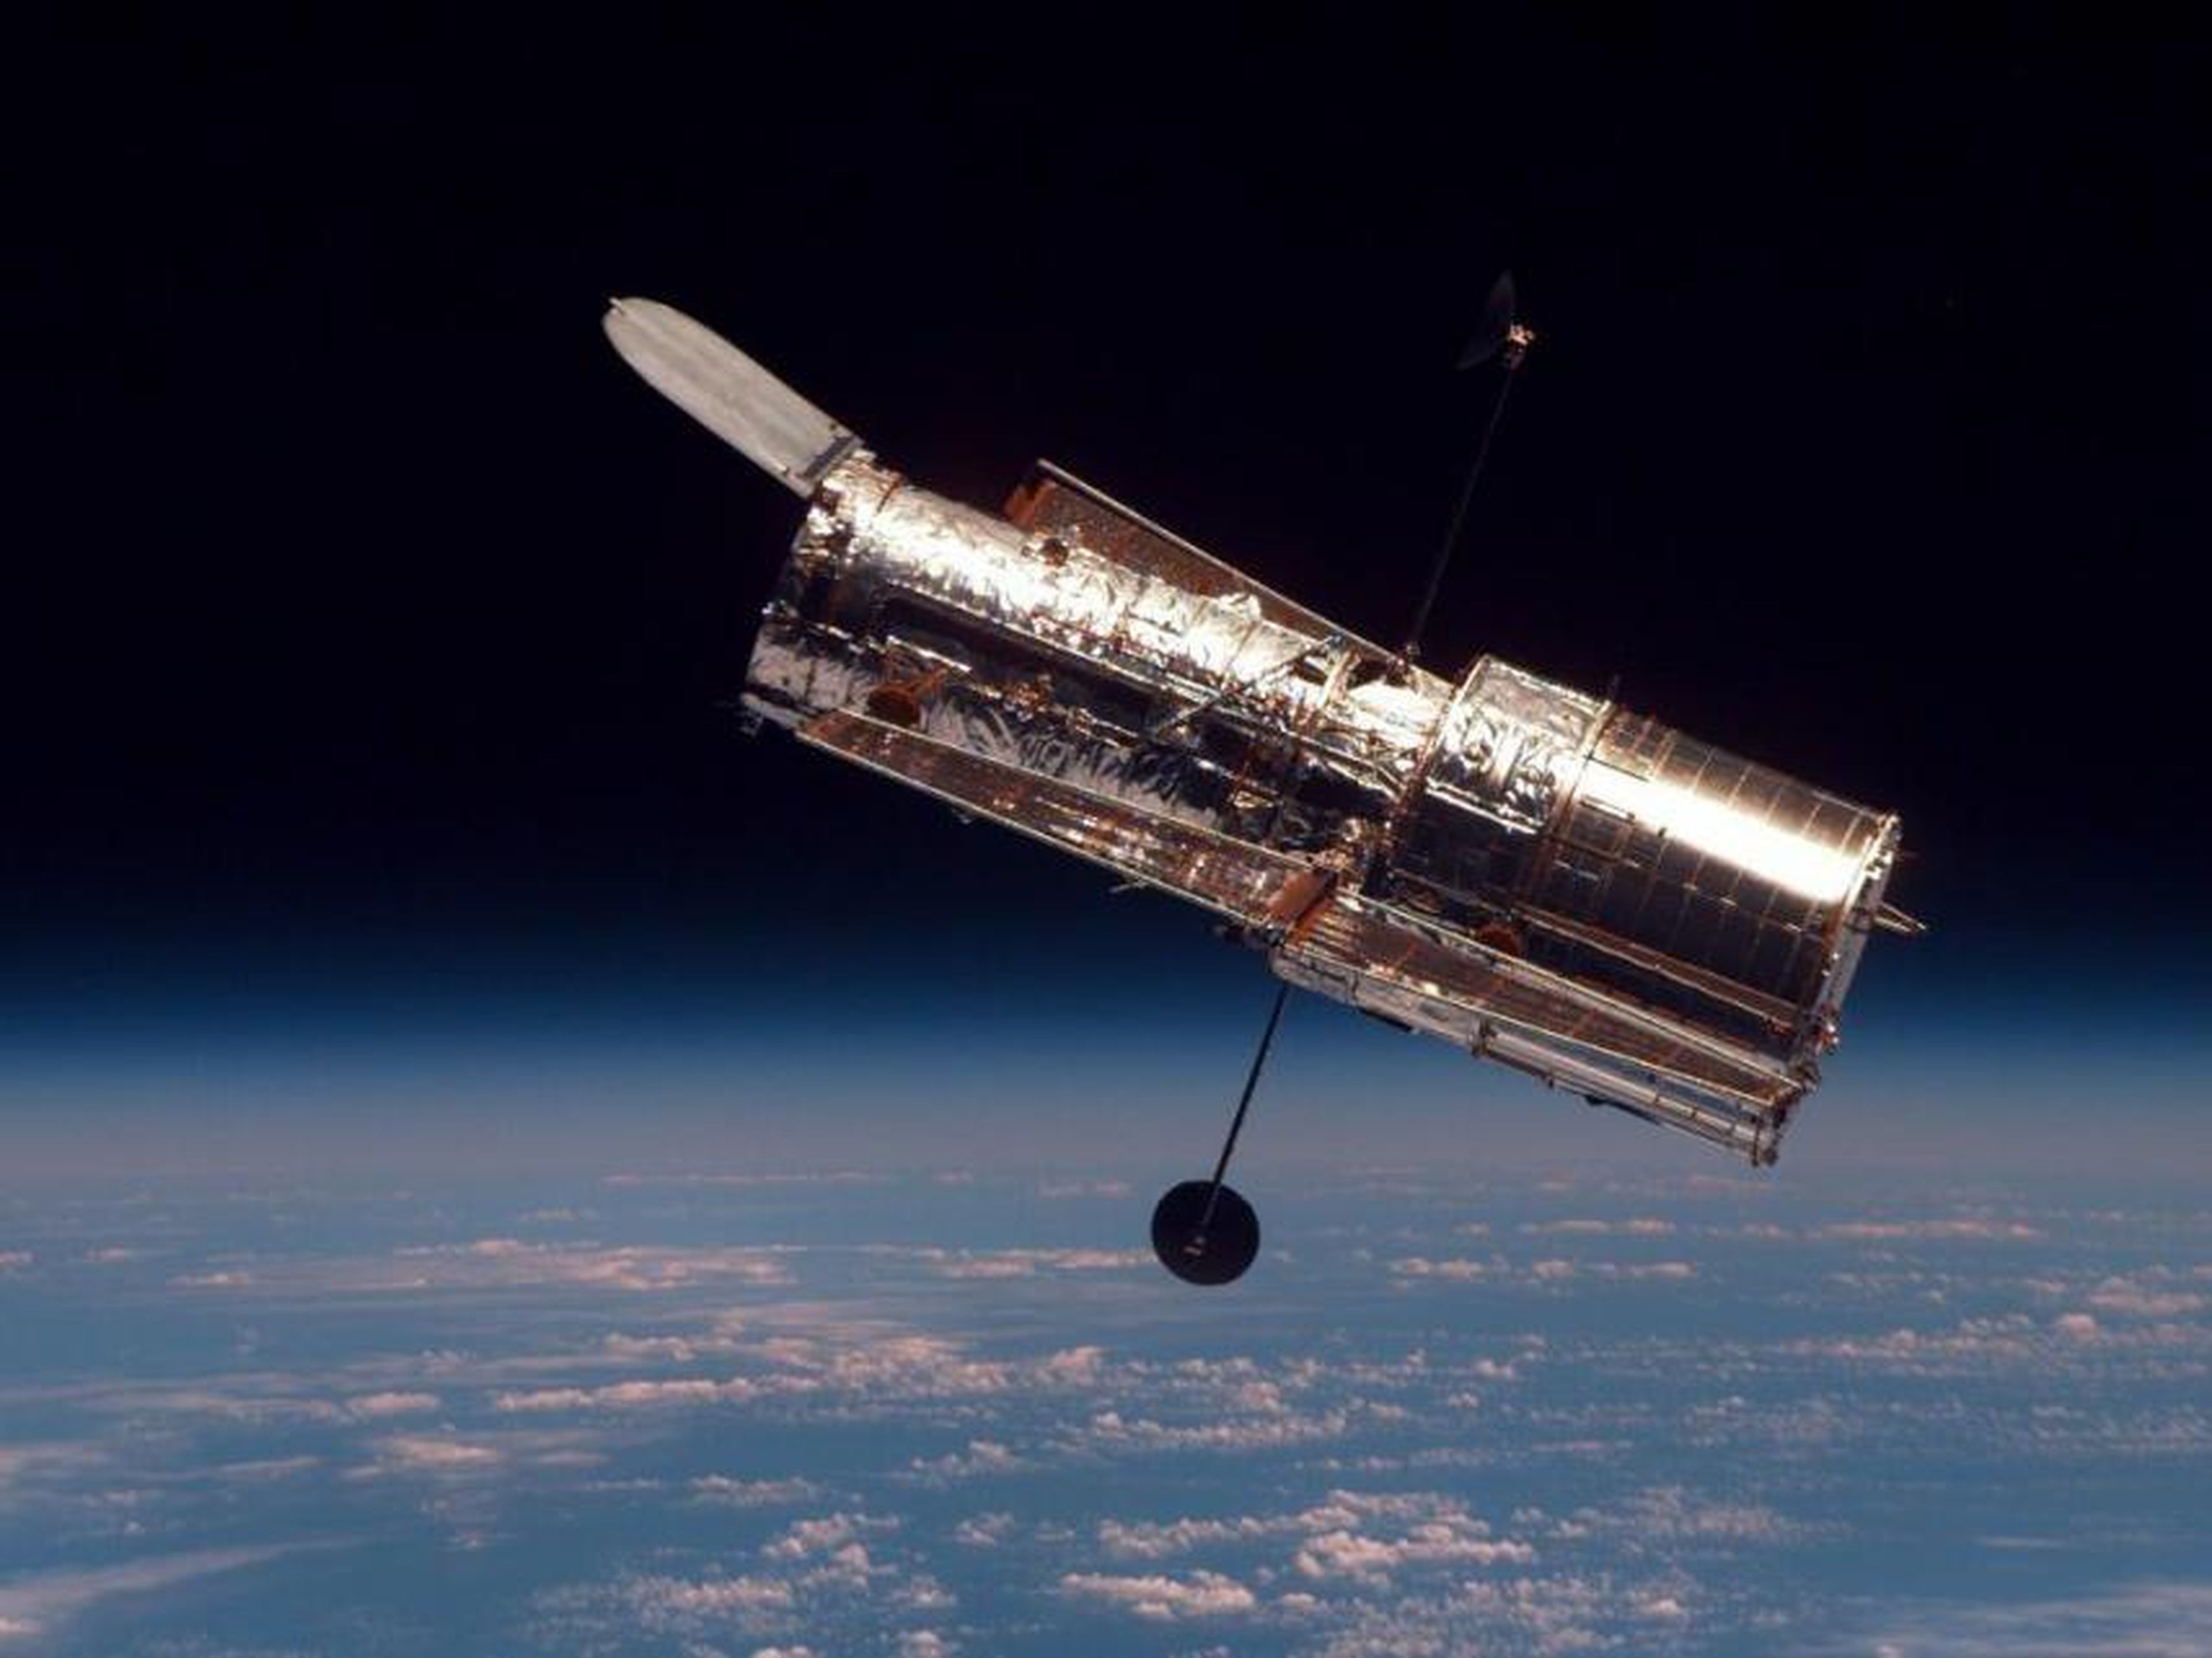 El siguiente objeto muy grande que caerá a la Tierra después de Tiangong-1 puede ser el telescopio espacial de la NASA, Hubble de 12,25 toneladas, que podría desorbitarse en 2021.